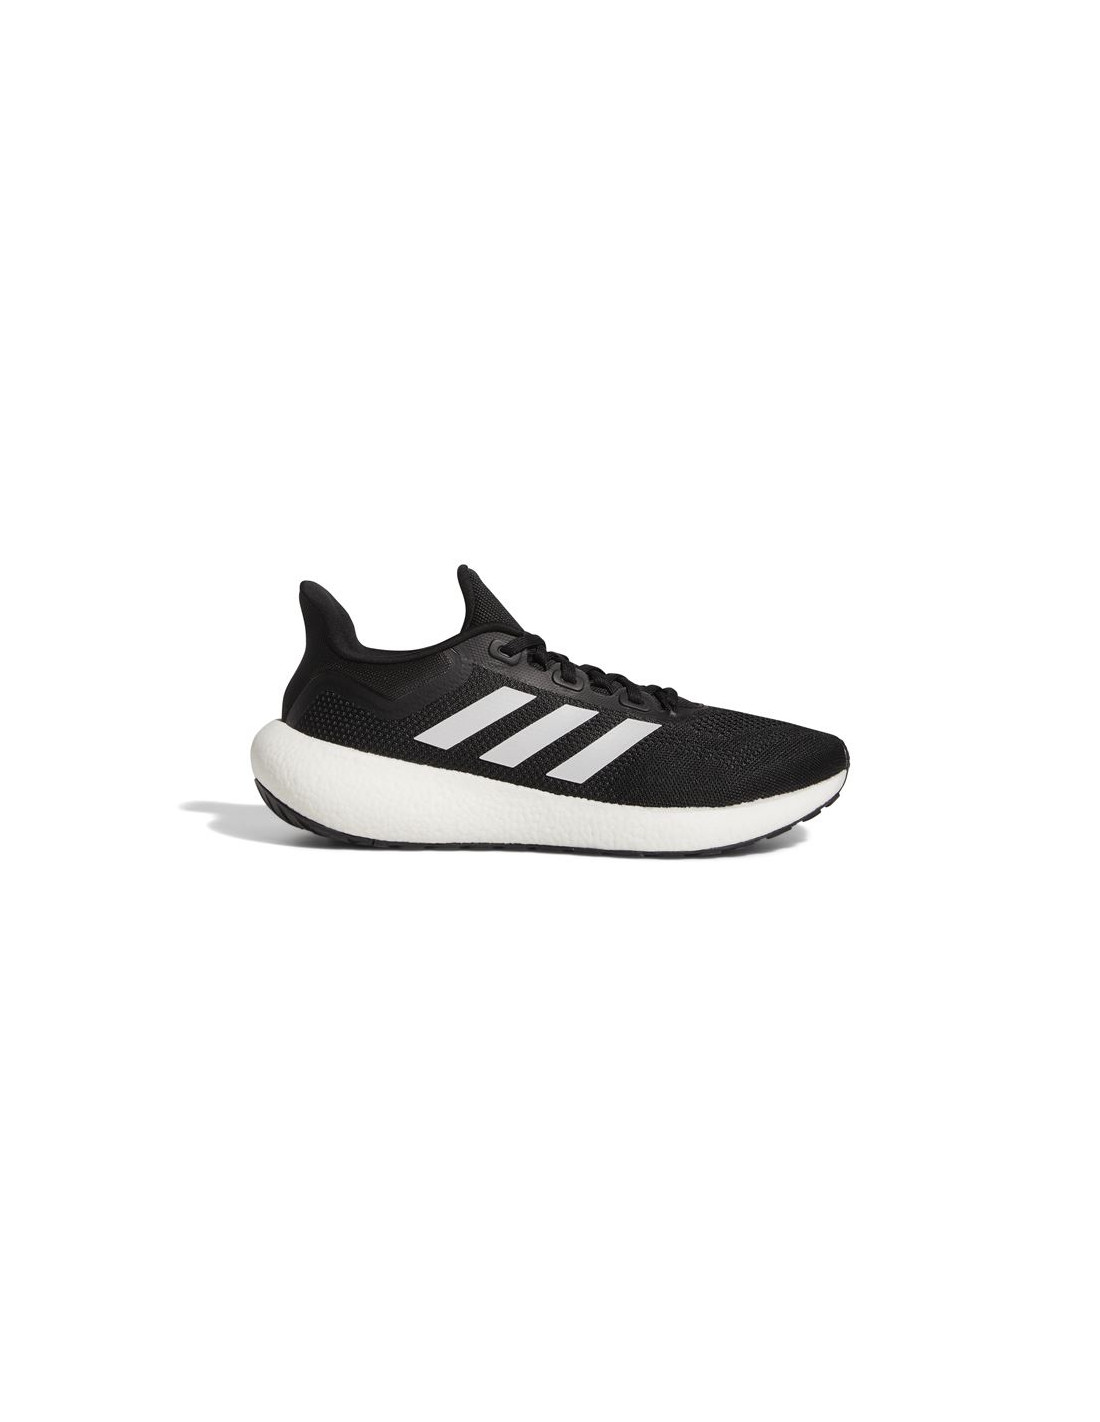 Adidas – Zapatillas para Hombre Negras – Pureboost 22 43 Negro